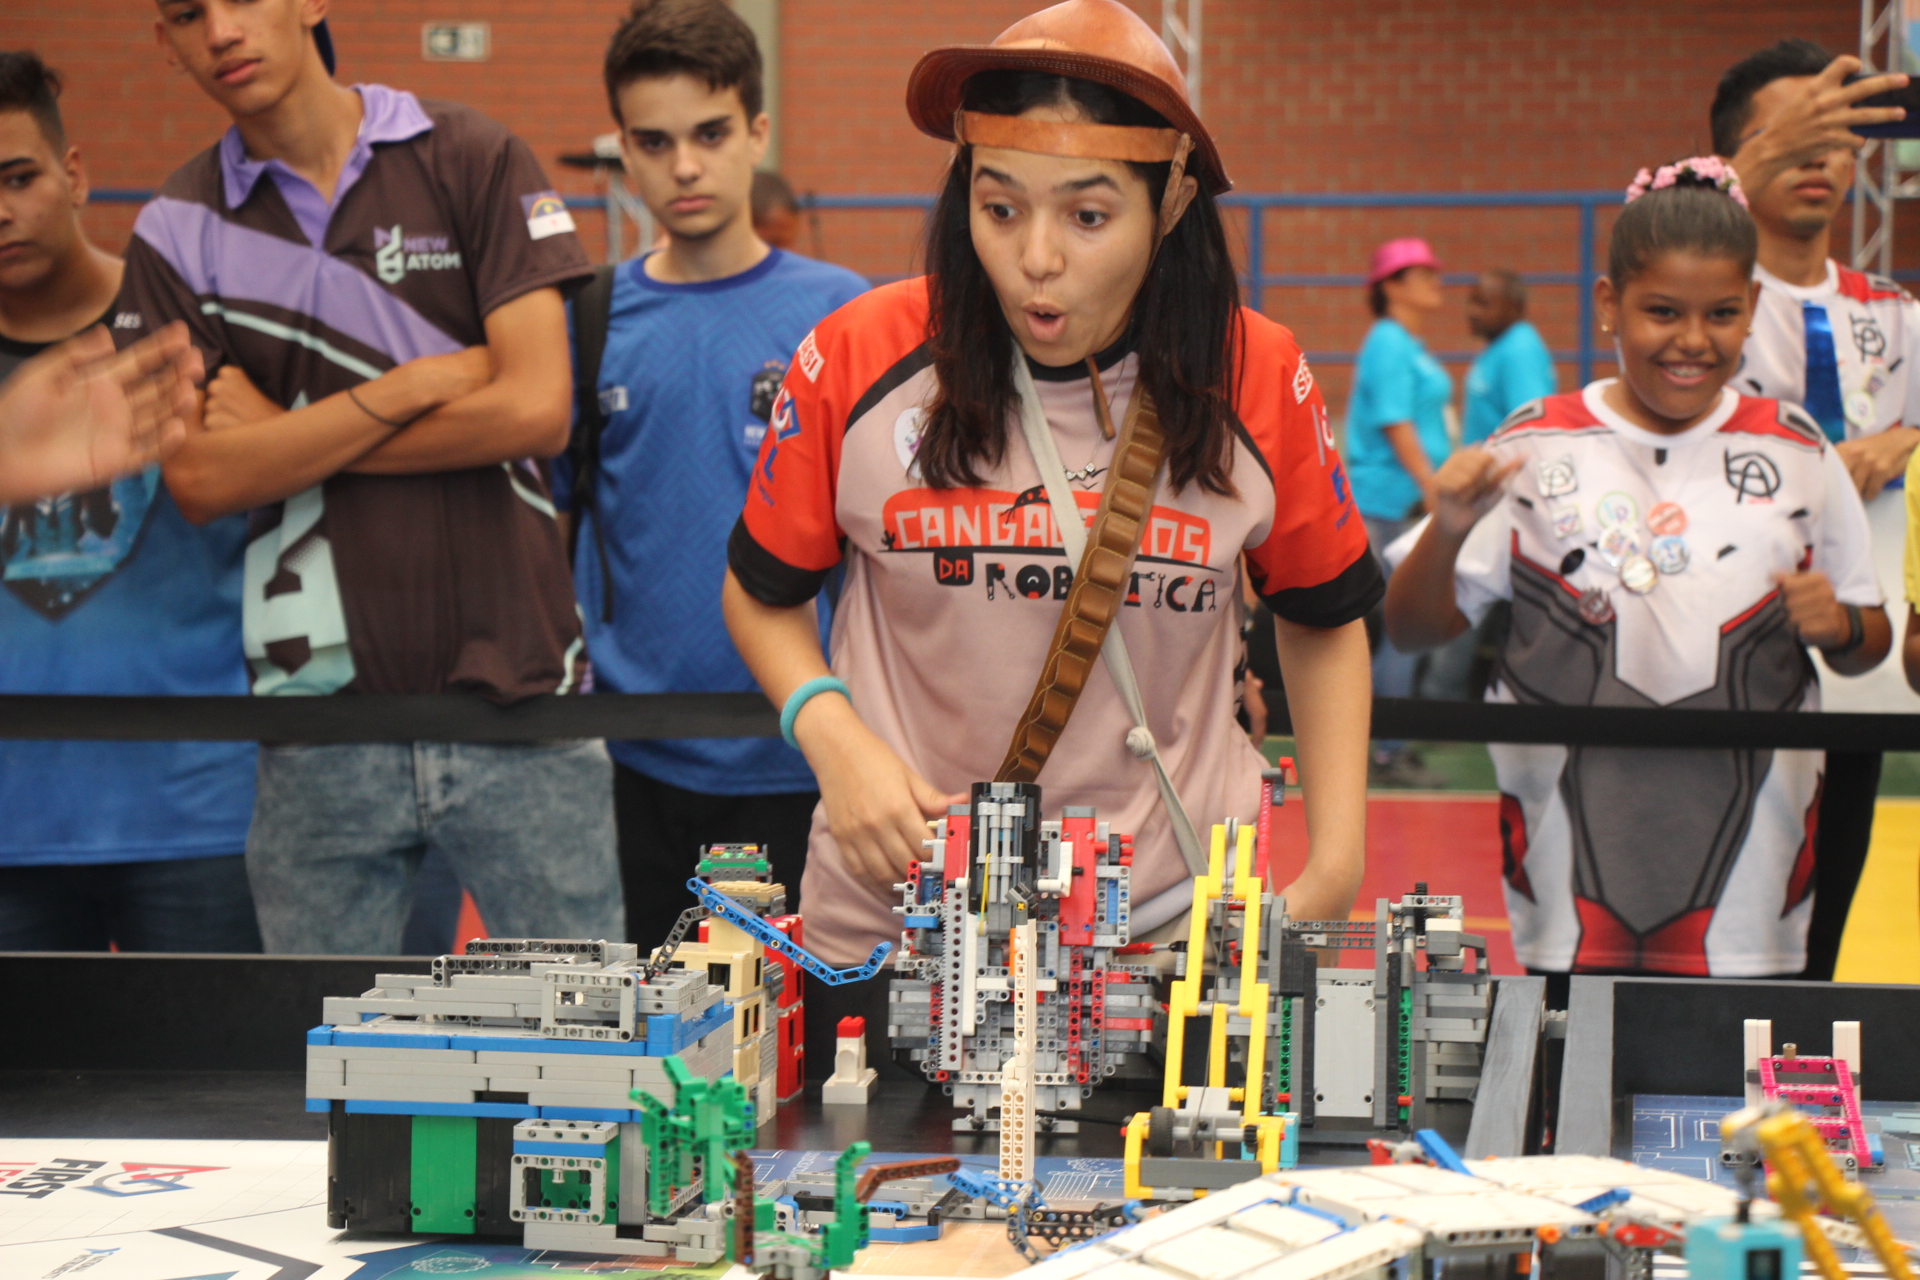 Maior torneio de robótica para estudantes iniciou sua etapa regional no SESI Paulista